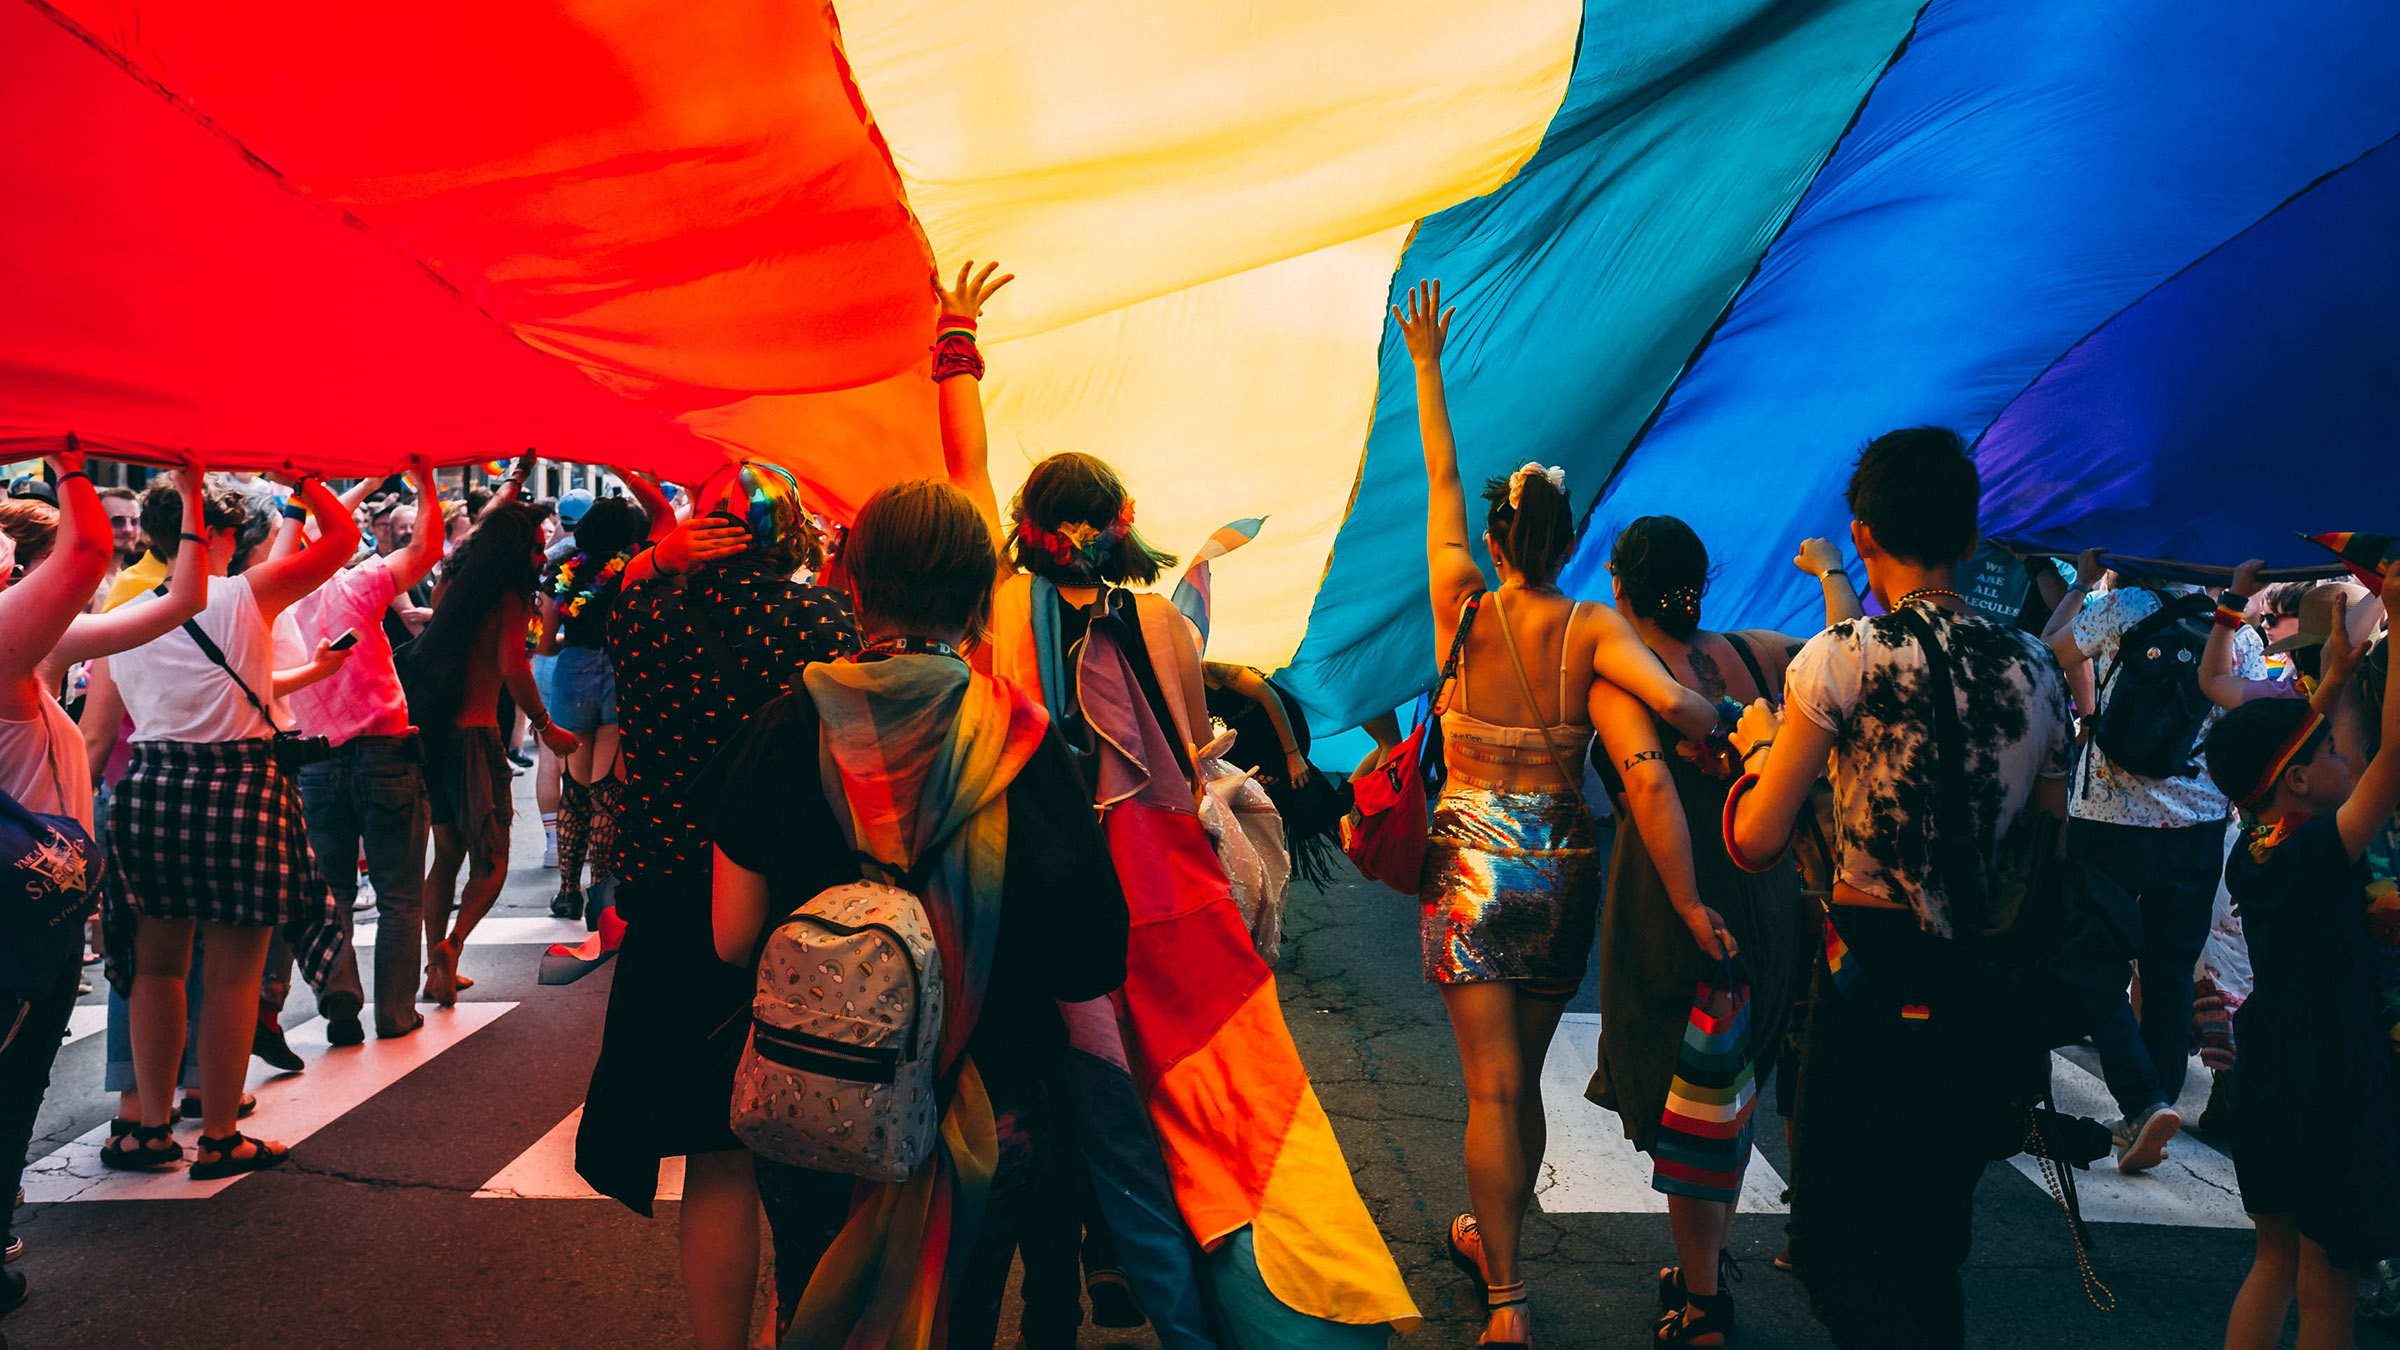 Regenbogenflagge: Was Du über sie wissen musst